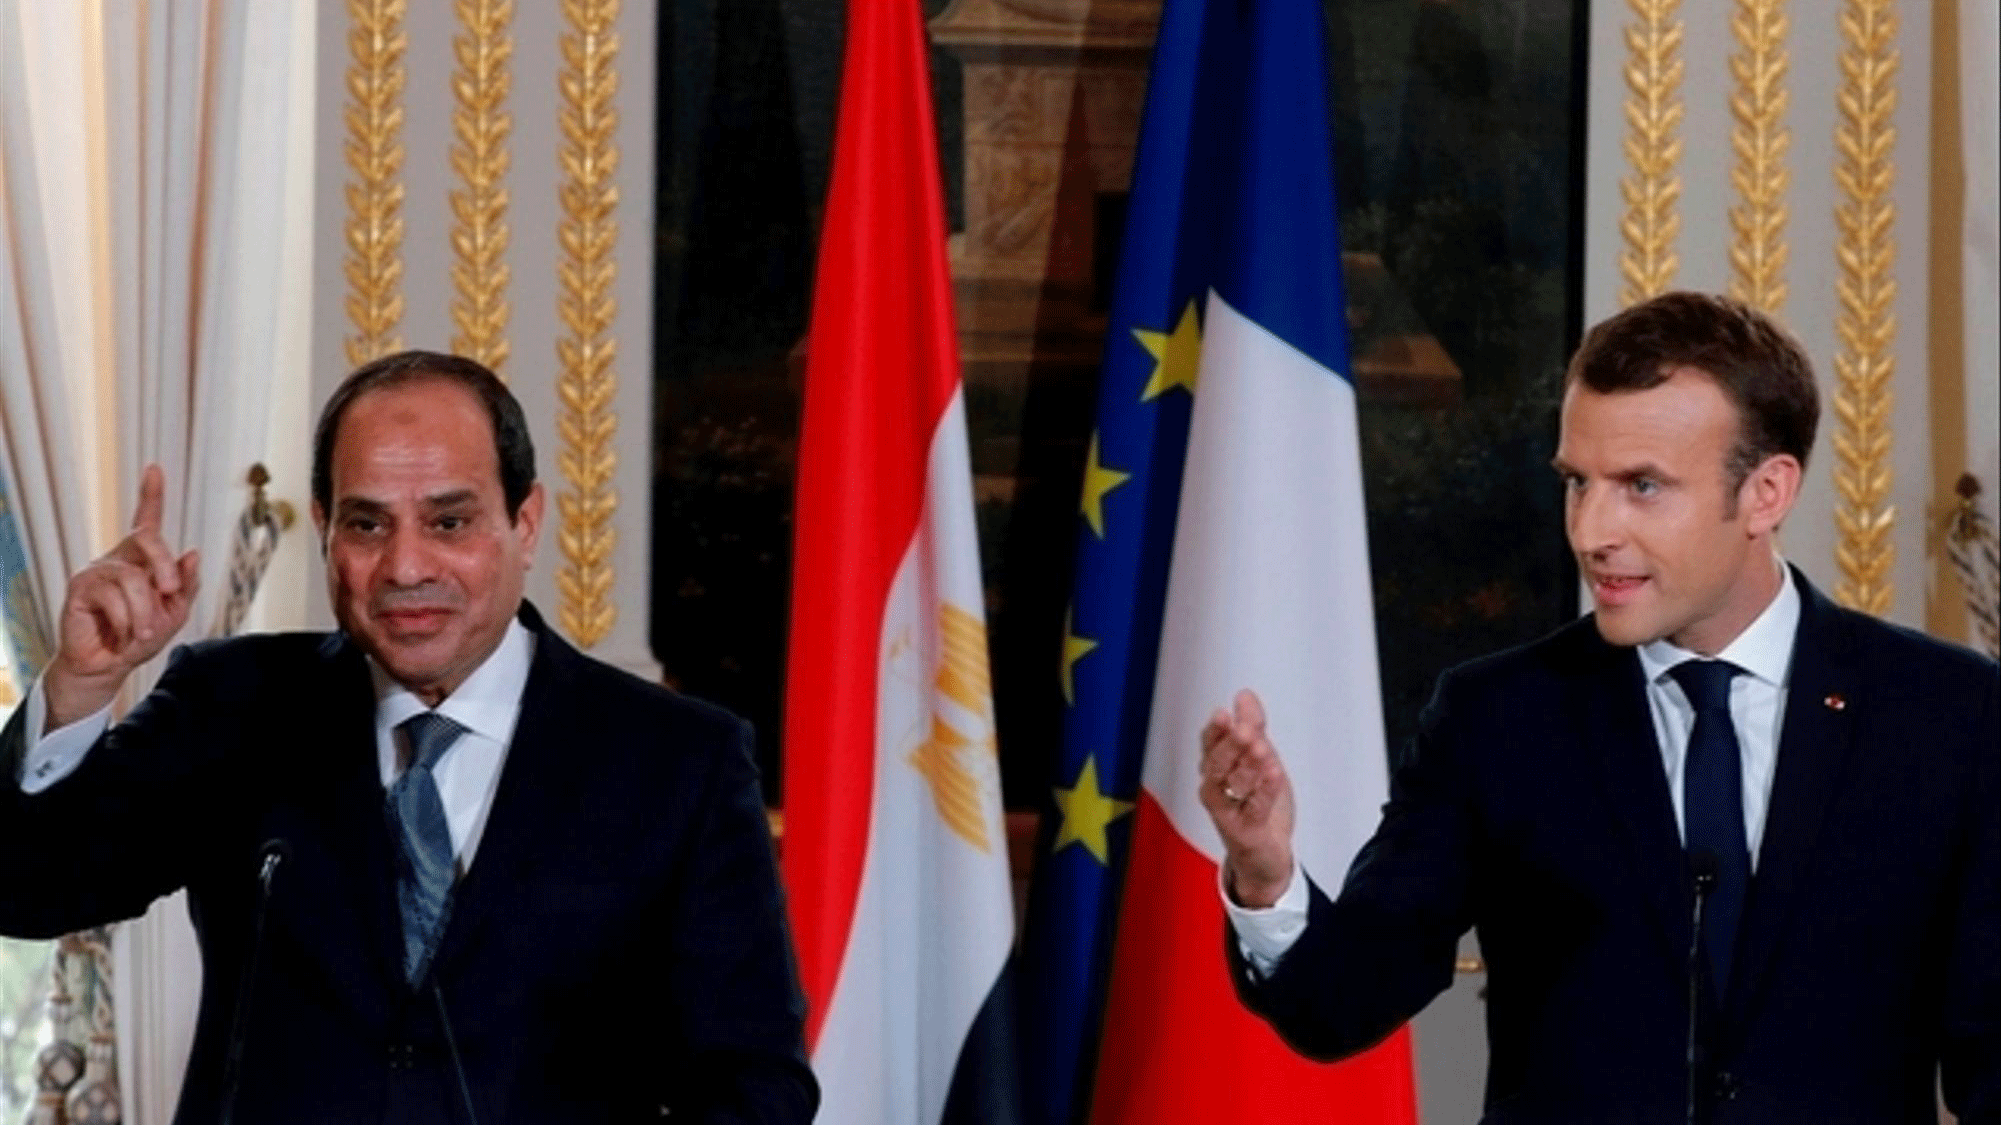 الرئيسان الفرنسي إيمانويل ماكرون والمصري عبد الفتاح السيسي في لقاء في باريس عام 2017